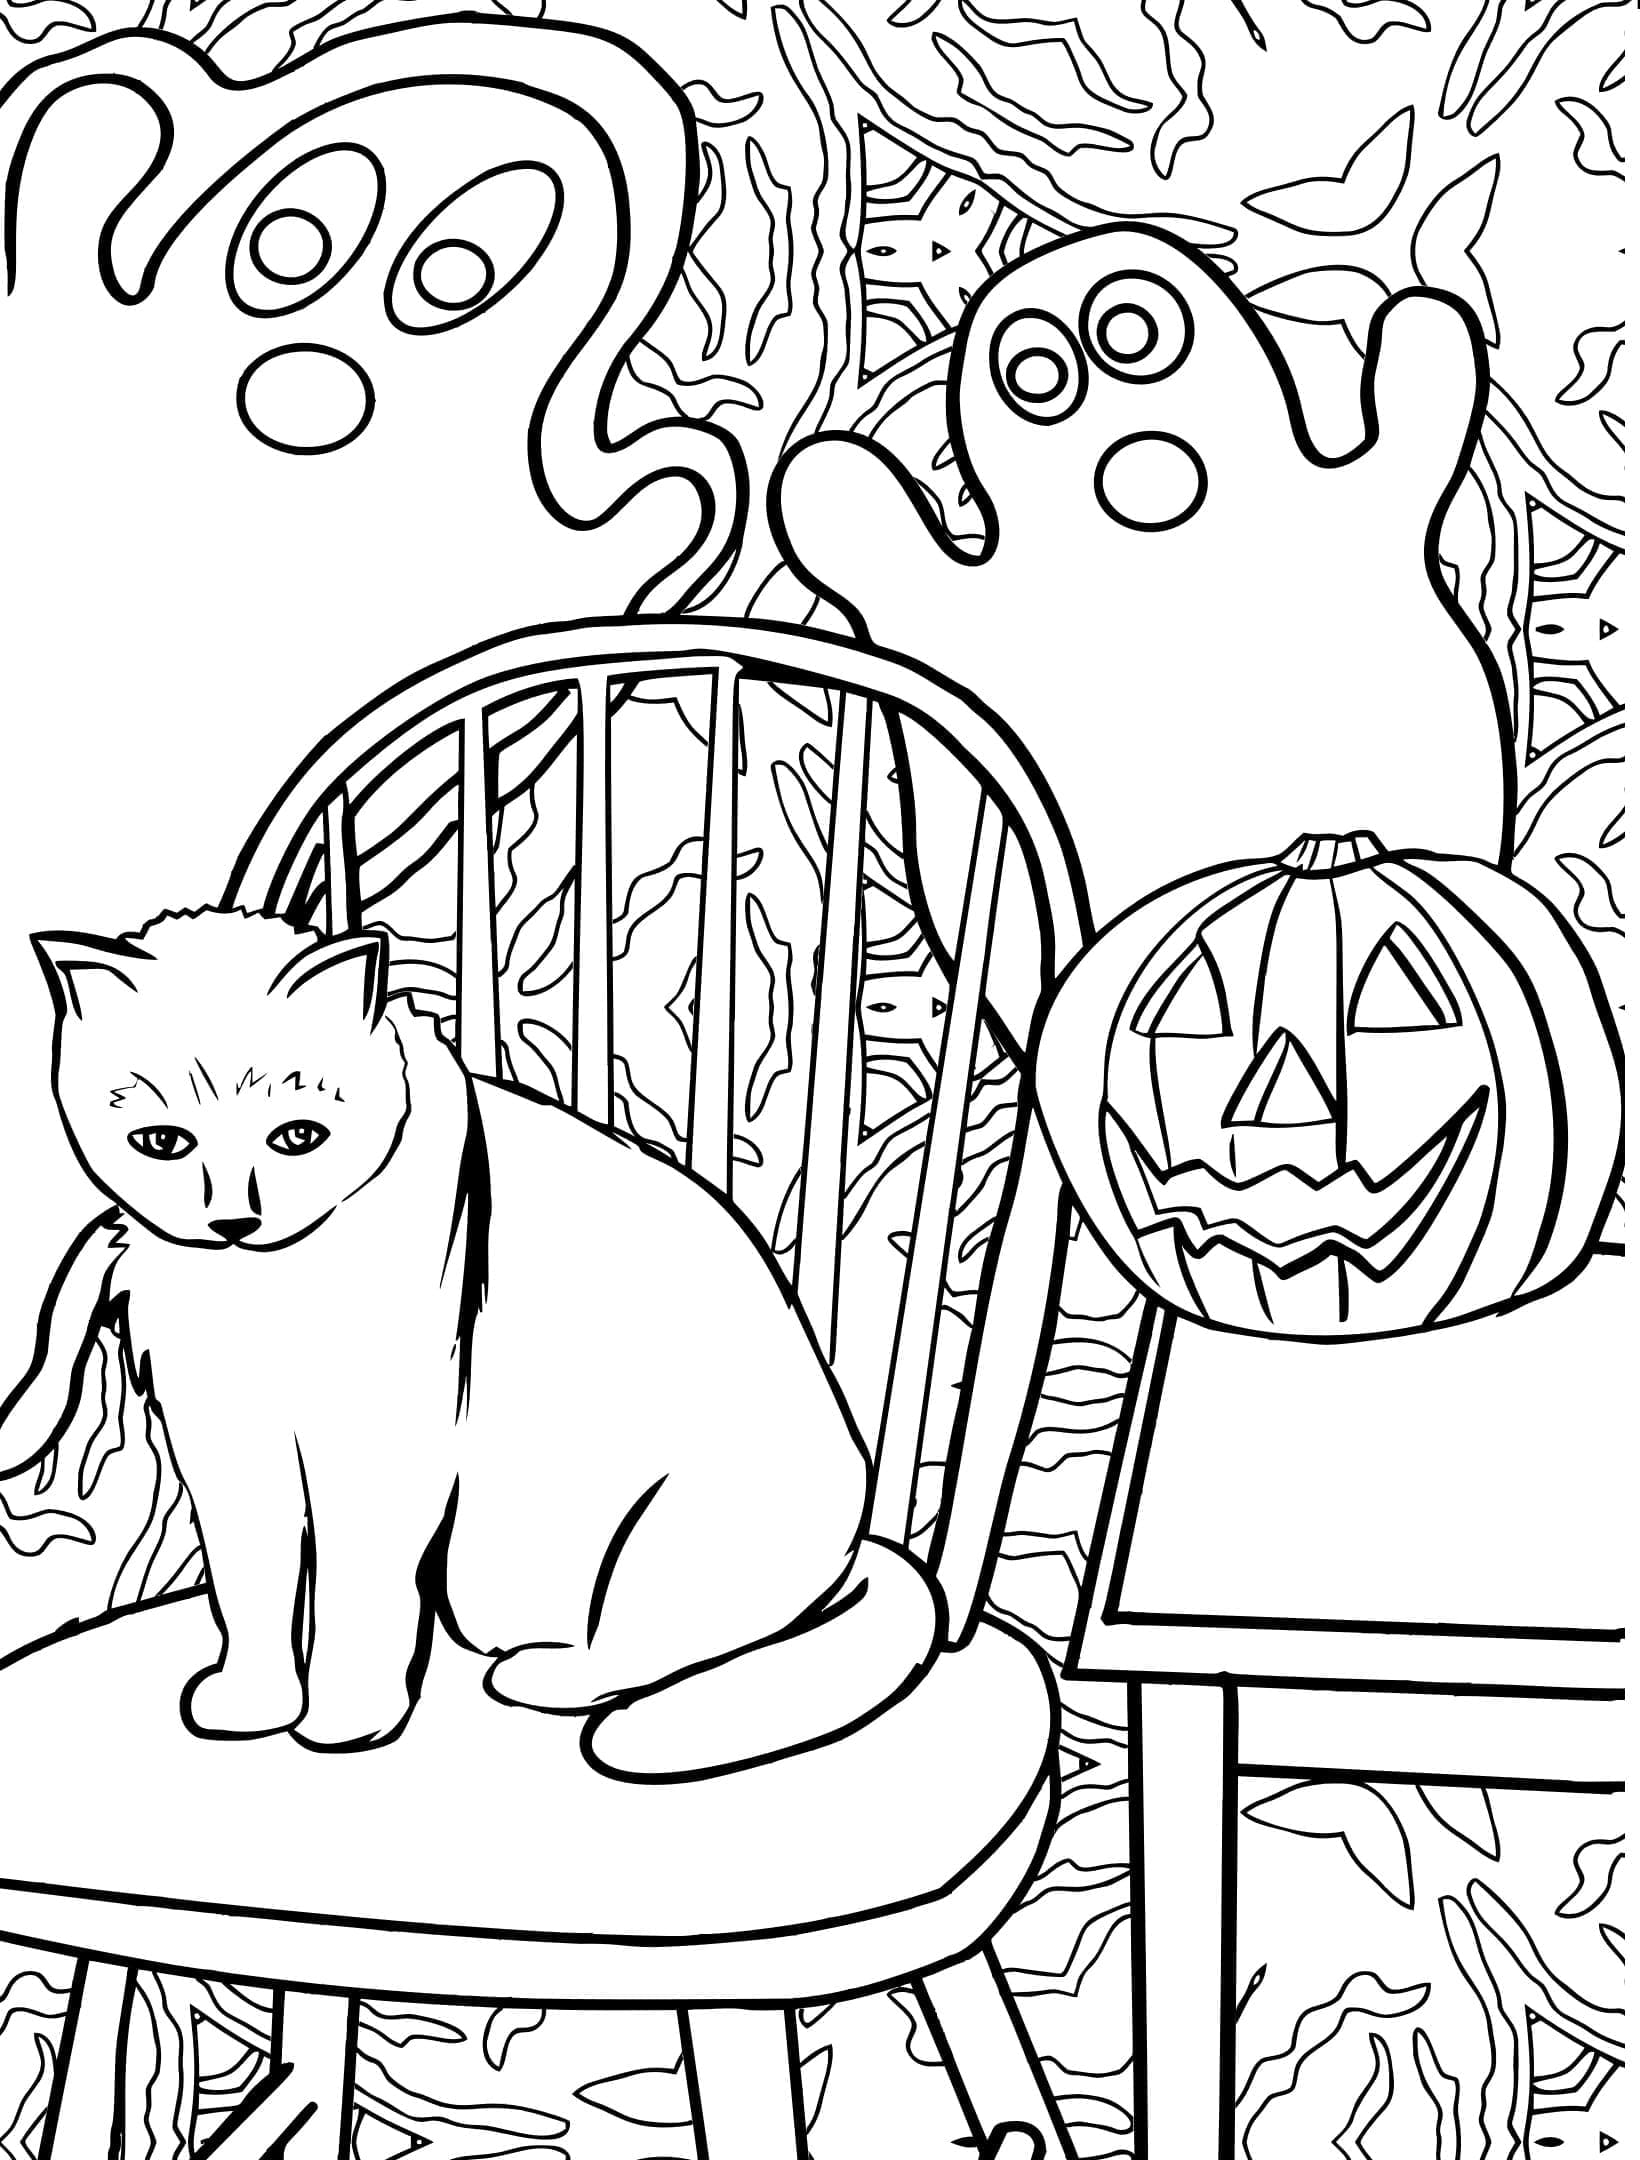 Chat d’Halloween avec des Fantômes coloring page